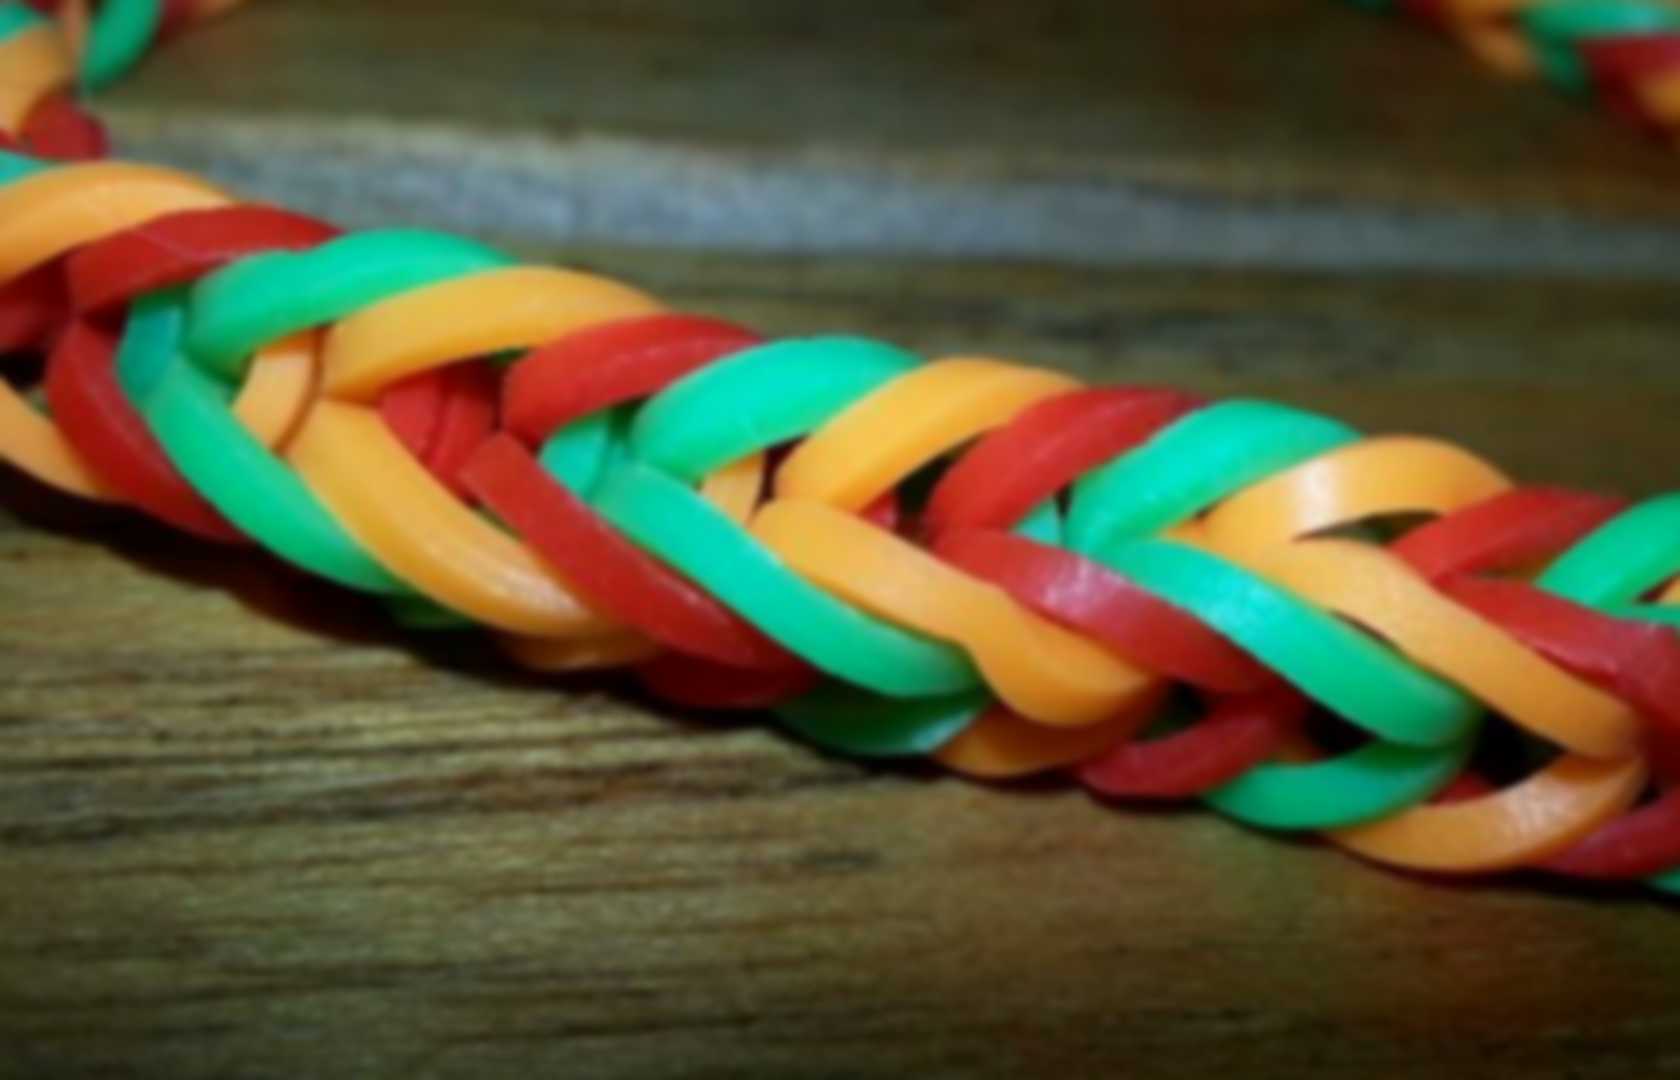 cool rainbow loom bracelets